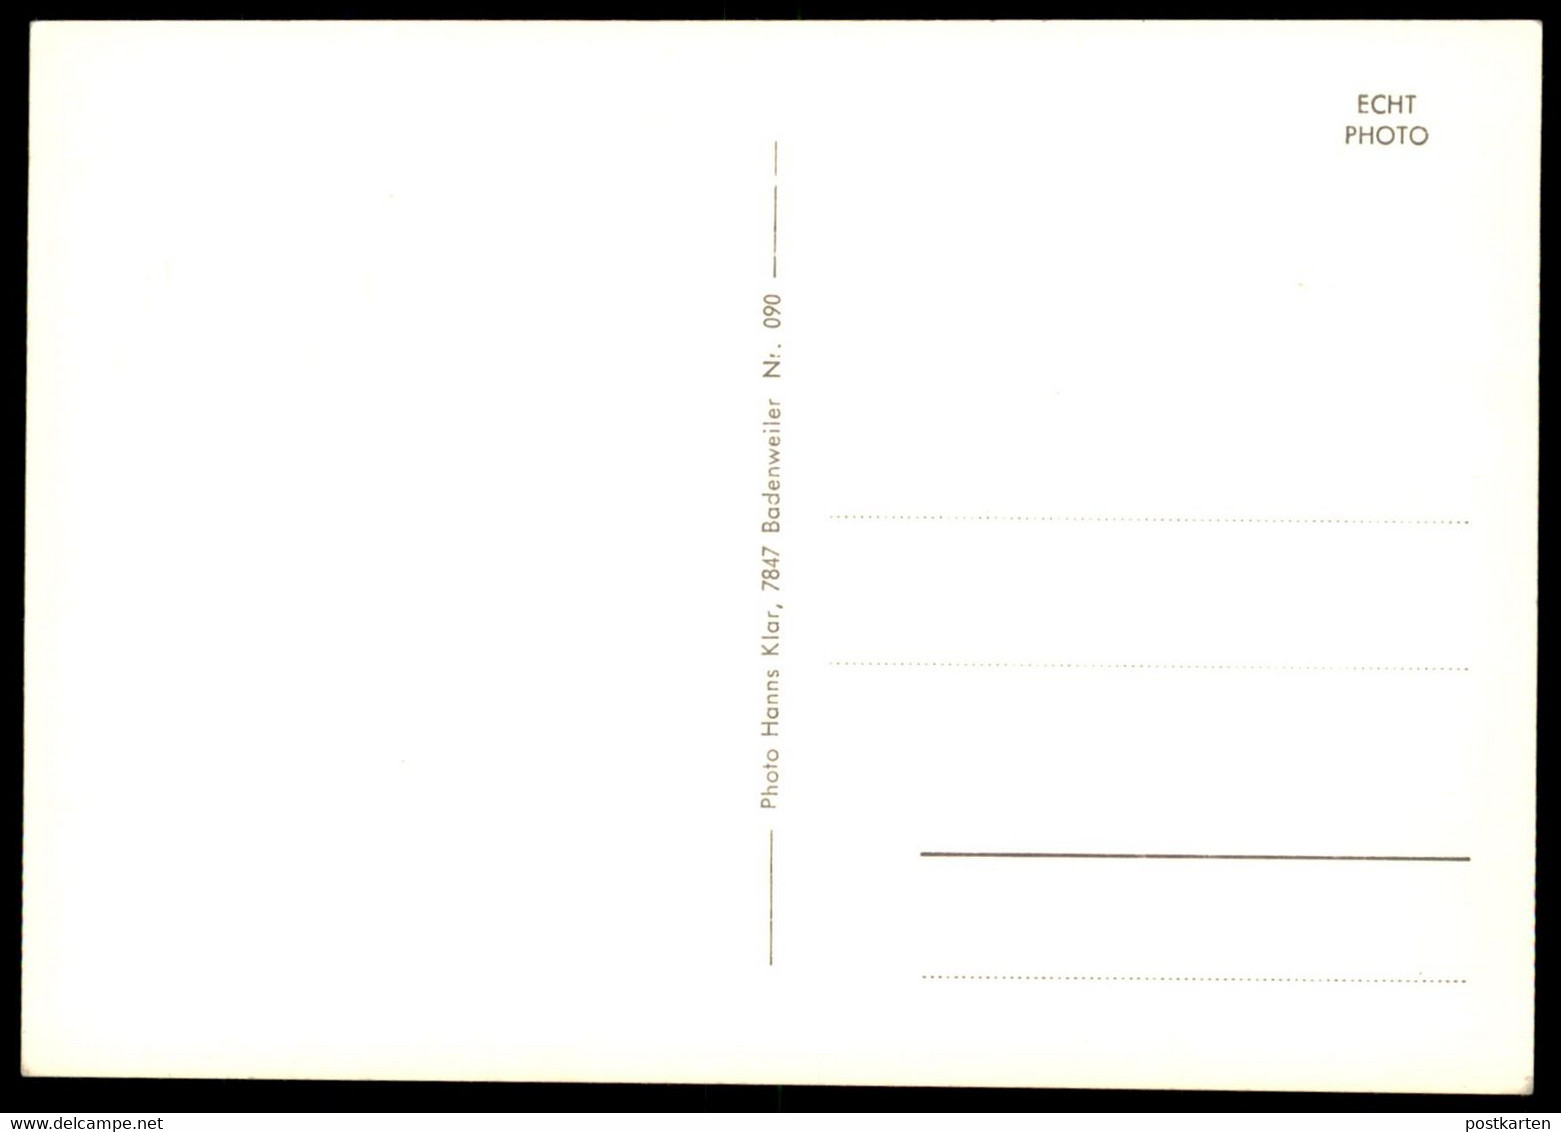 ALTE POSTKARTE KÄLBELE-SCHEUER BELCHENGEBIET MÜNSTERTAL KÄLBELESCHEUER Belchen Schwarzwald AK Ansichtskarte Postcard Cpa - Muenstertal